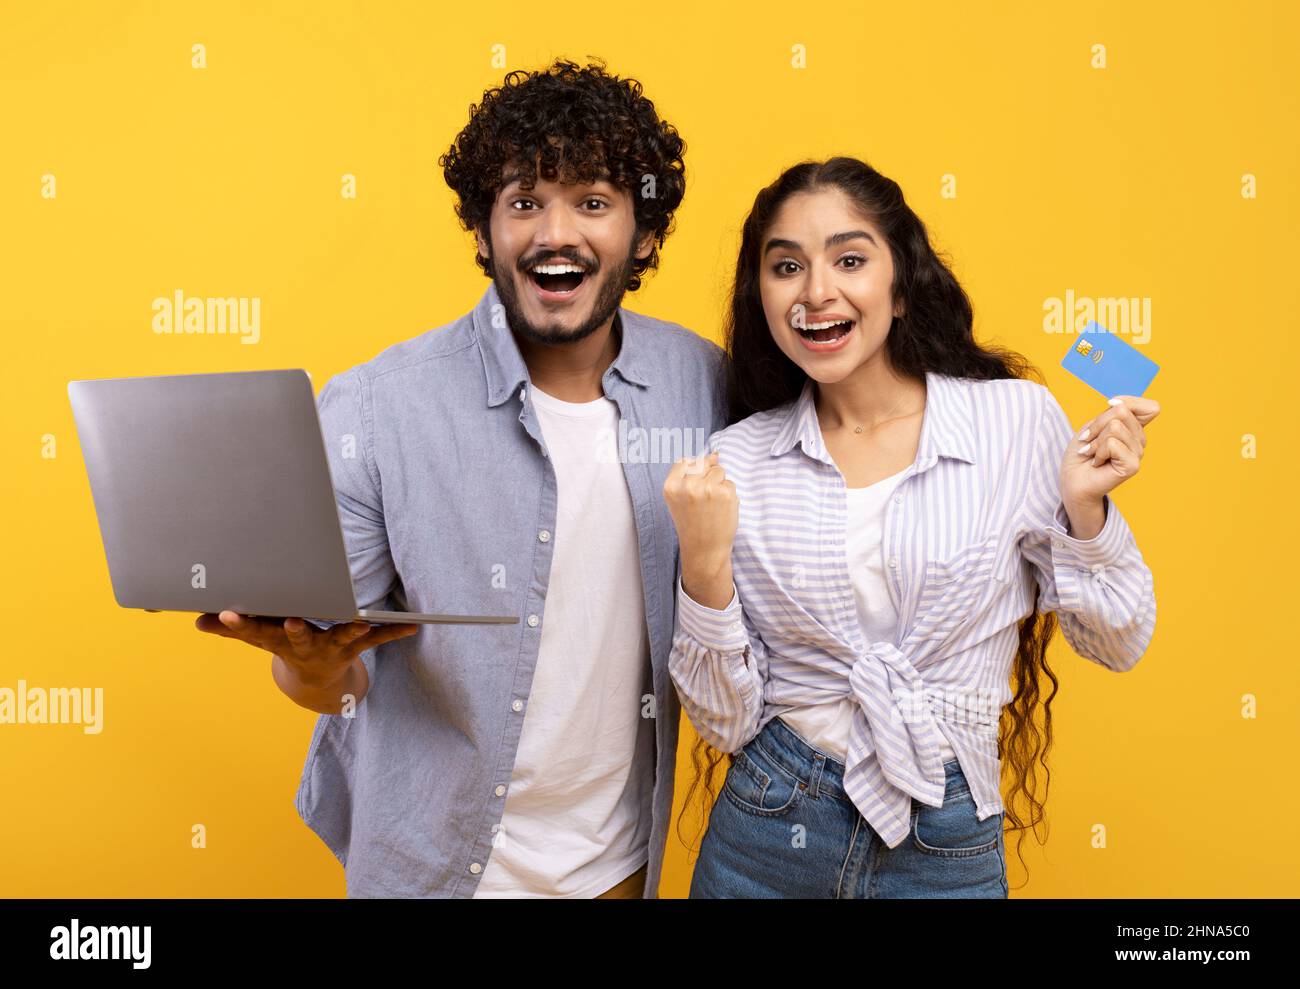 Sì, vendite enormi nel webstore. Una coppia indiana che tiene la carta di credito e utilizza il computer portatile, facendo il gesto del vincitore Foto Stock